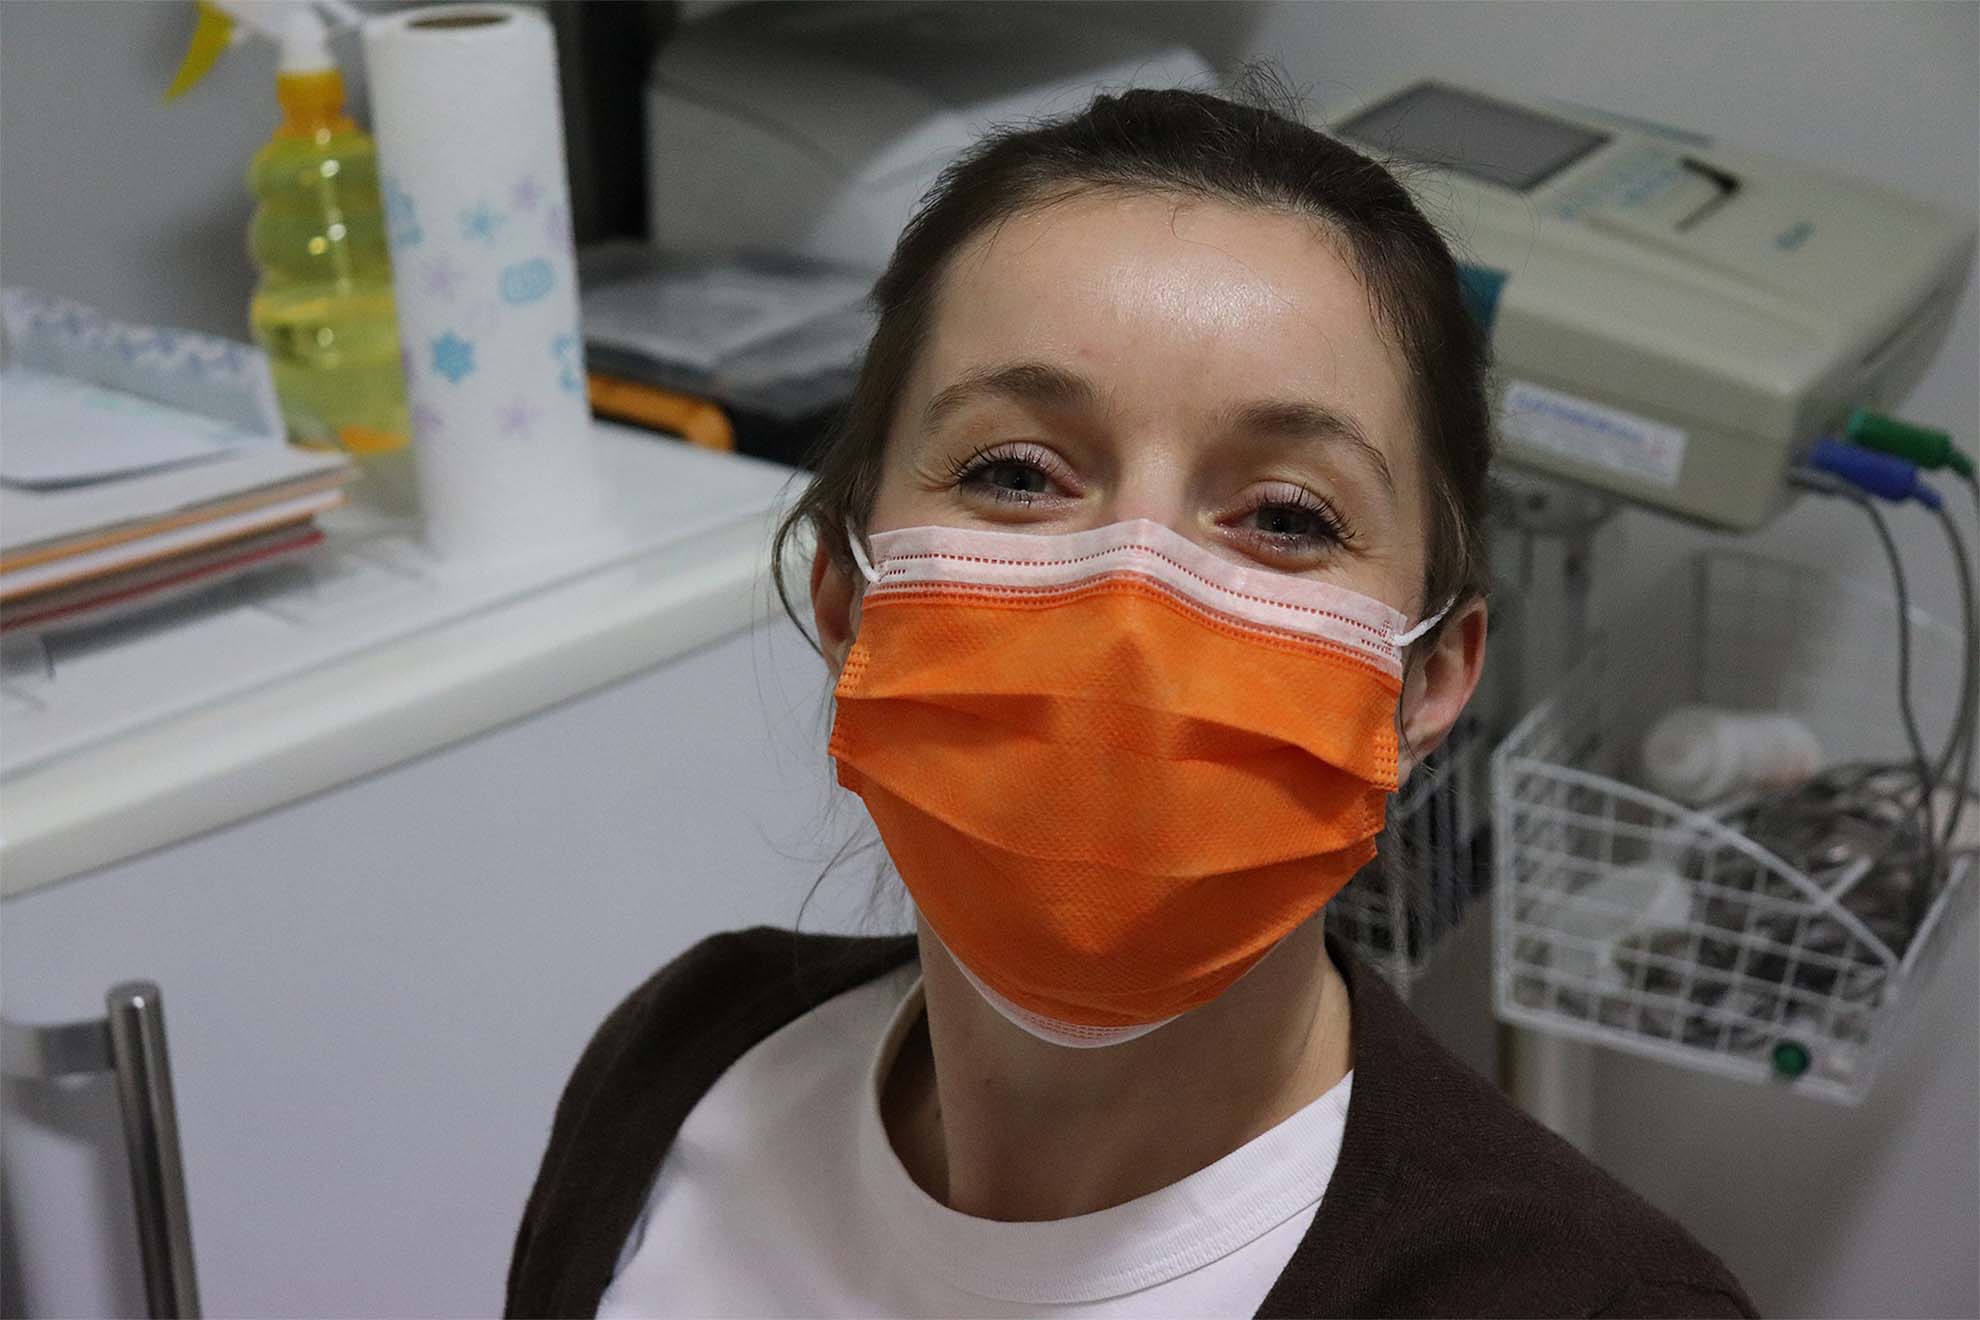 Dental nurse smiling behind mask